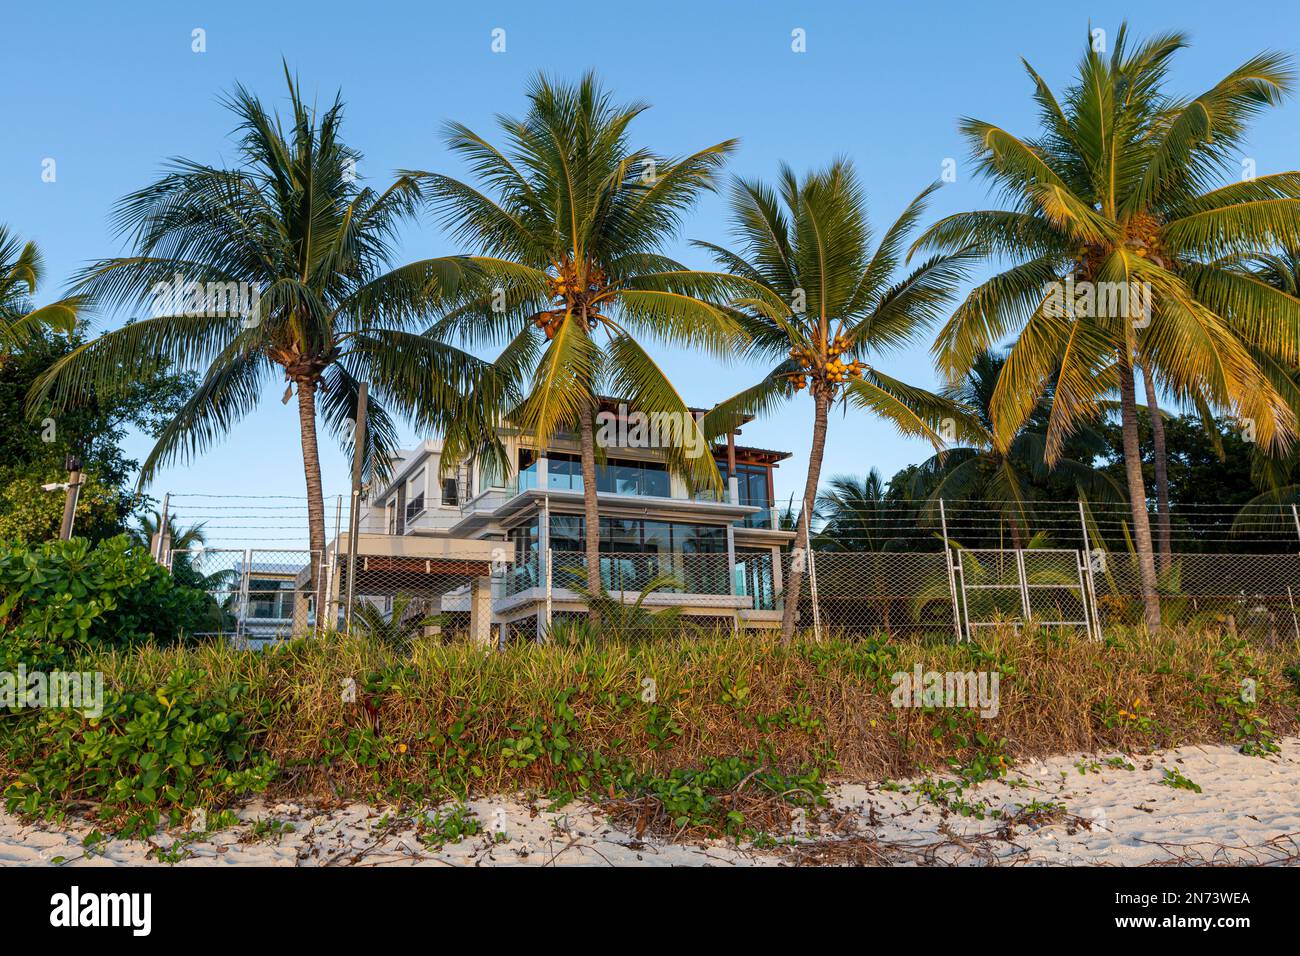 Einige Häuser am Strand von Flic en flac auf mauritius Island, afrika Stockfoto